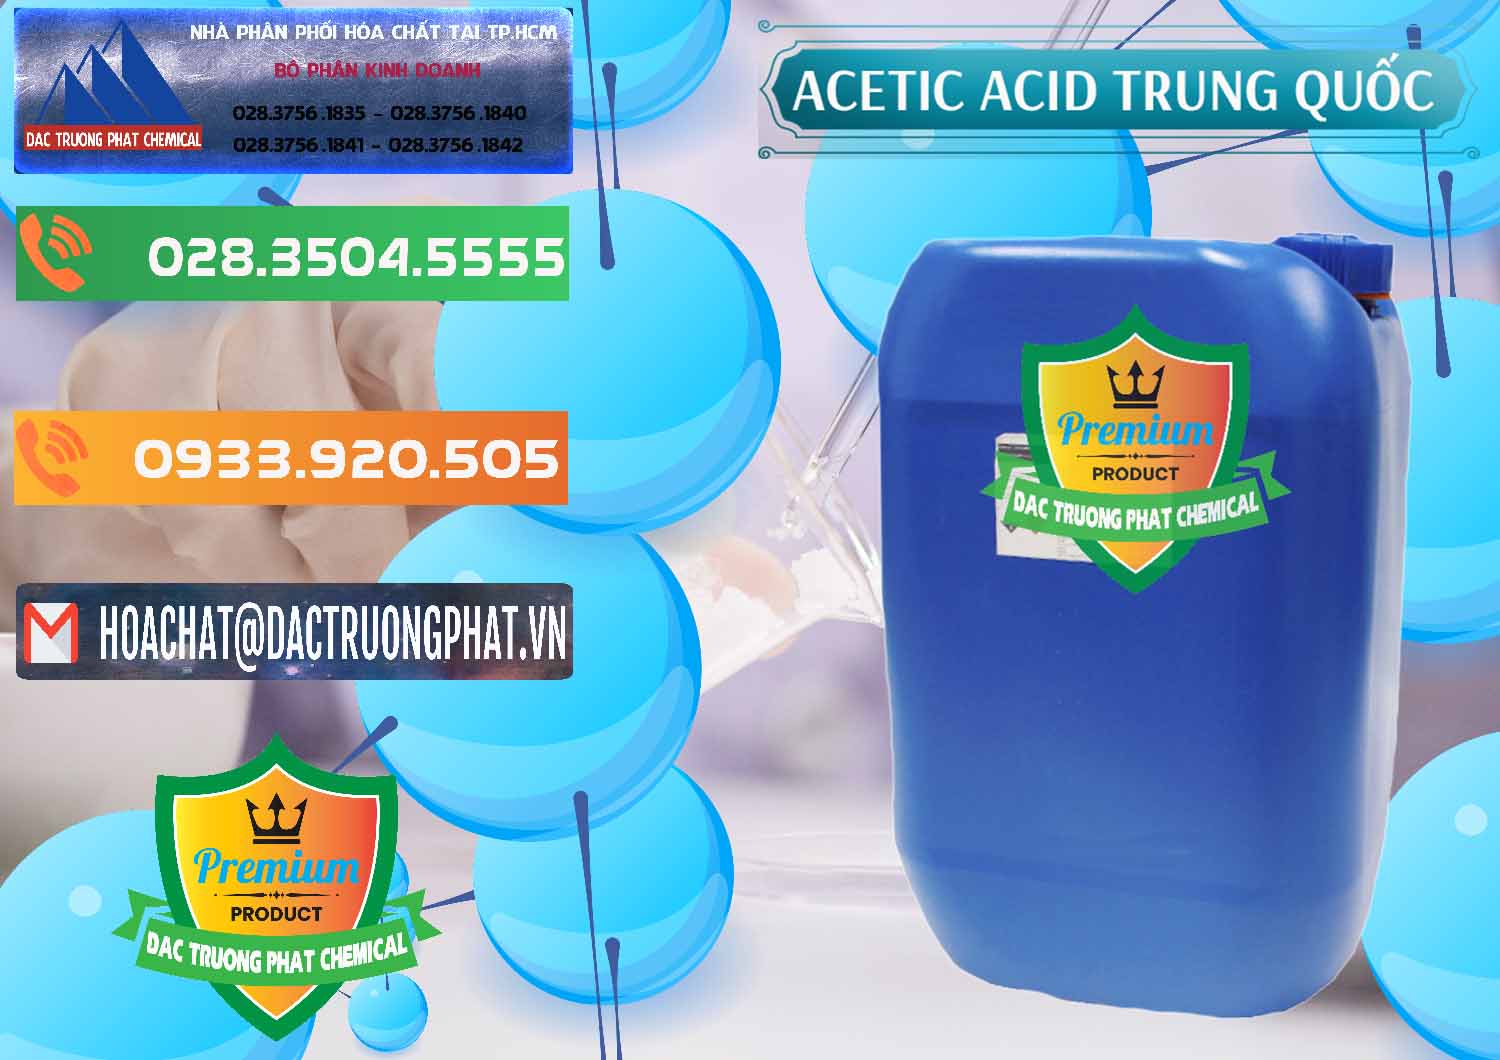 Cty chuyên cung ứng & bán Acetic Acid – Axit Acetic Trung Quốc China - 0358 - Nơi nhập khẩu _ cung cấp hóa chất tại TP.HCM - hoachatxulynuoc.com.vn